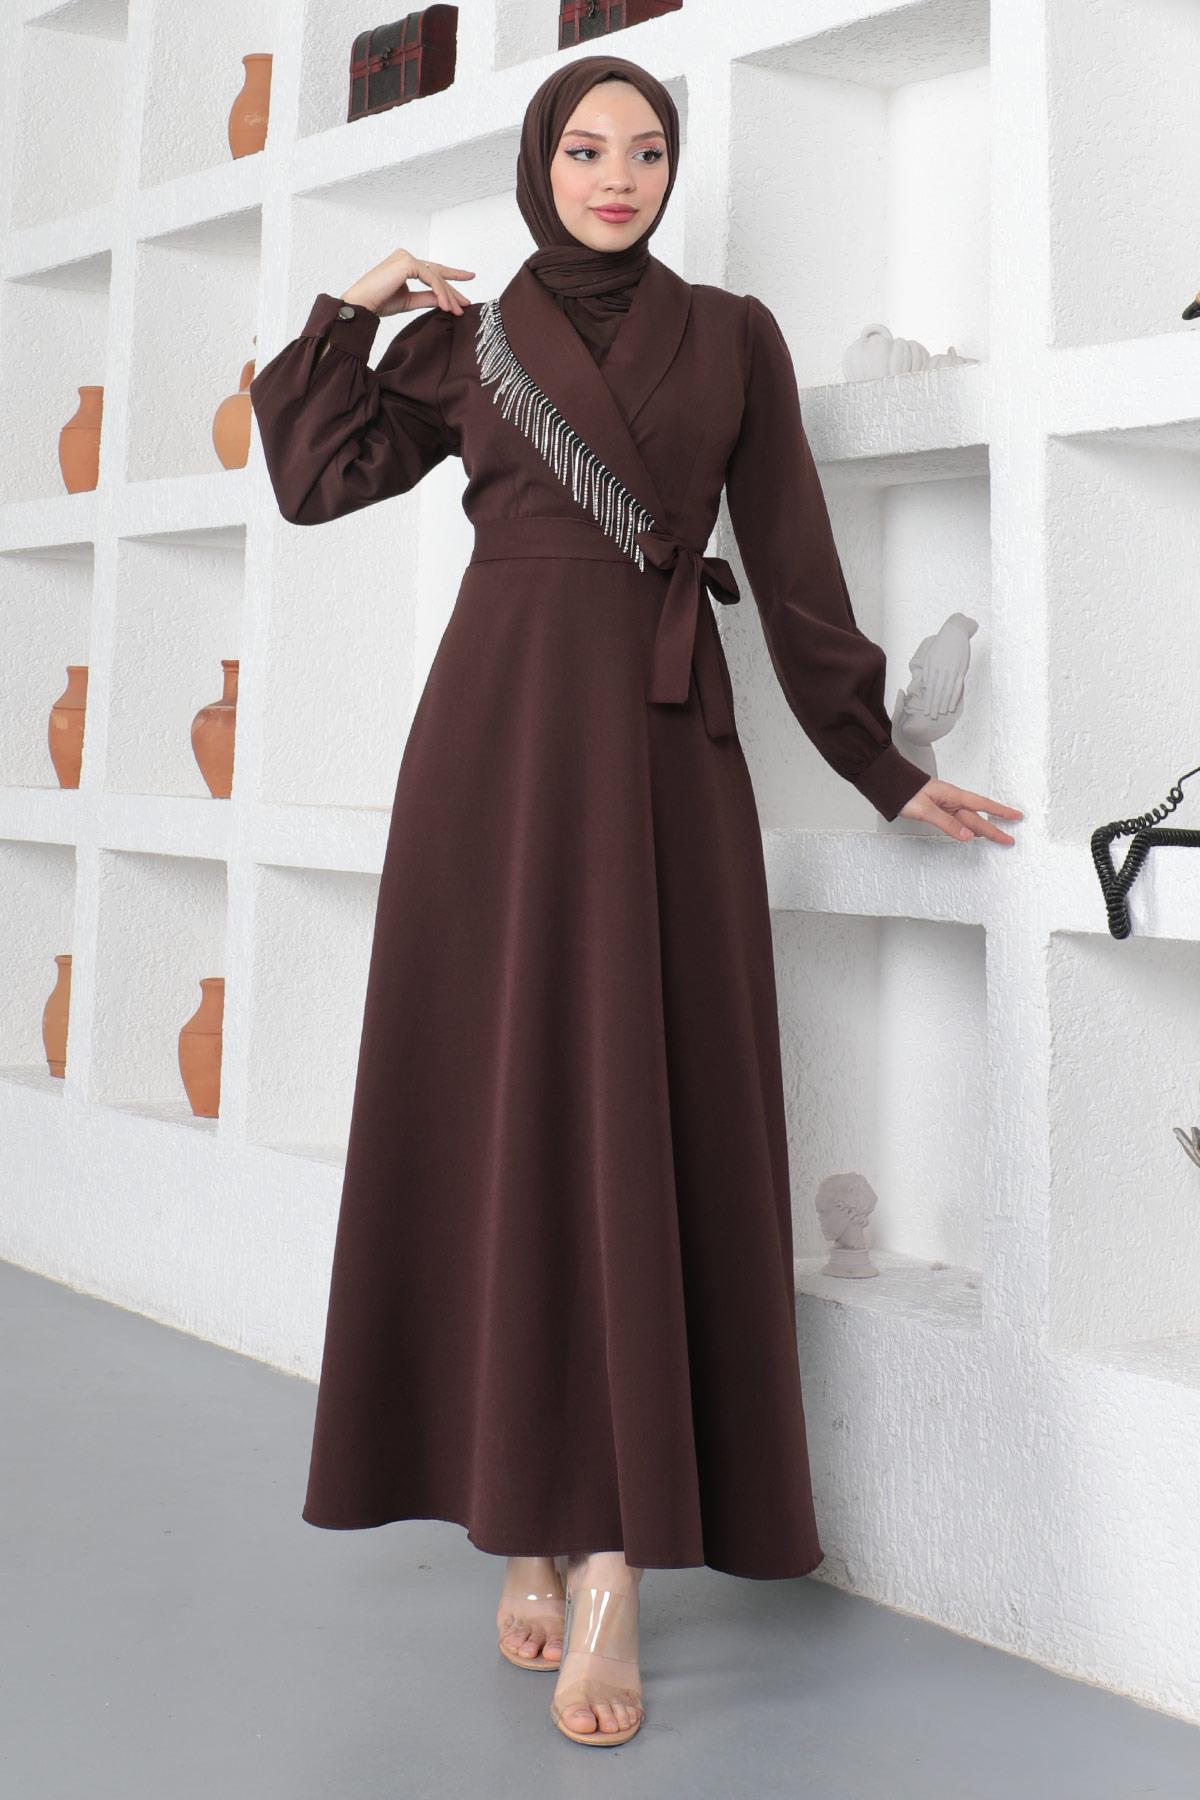 Taş Püsküllü Elbise Kahverengi 18700 - Modamihram